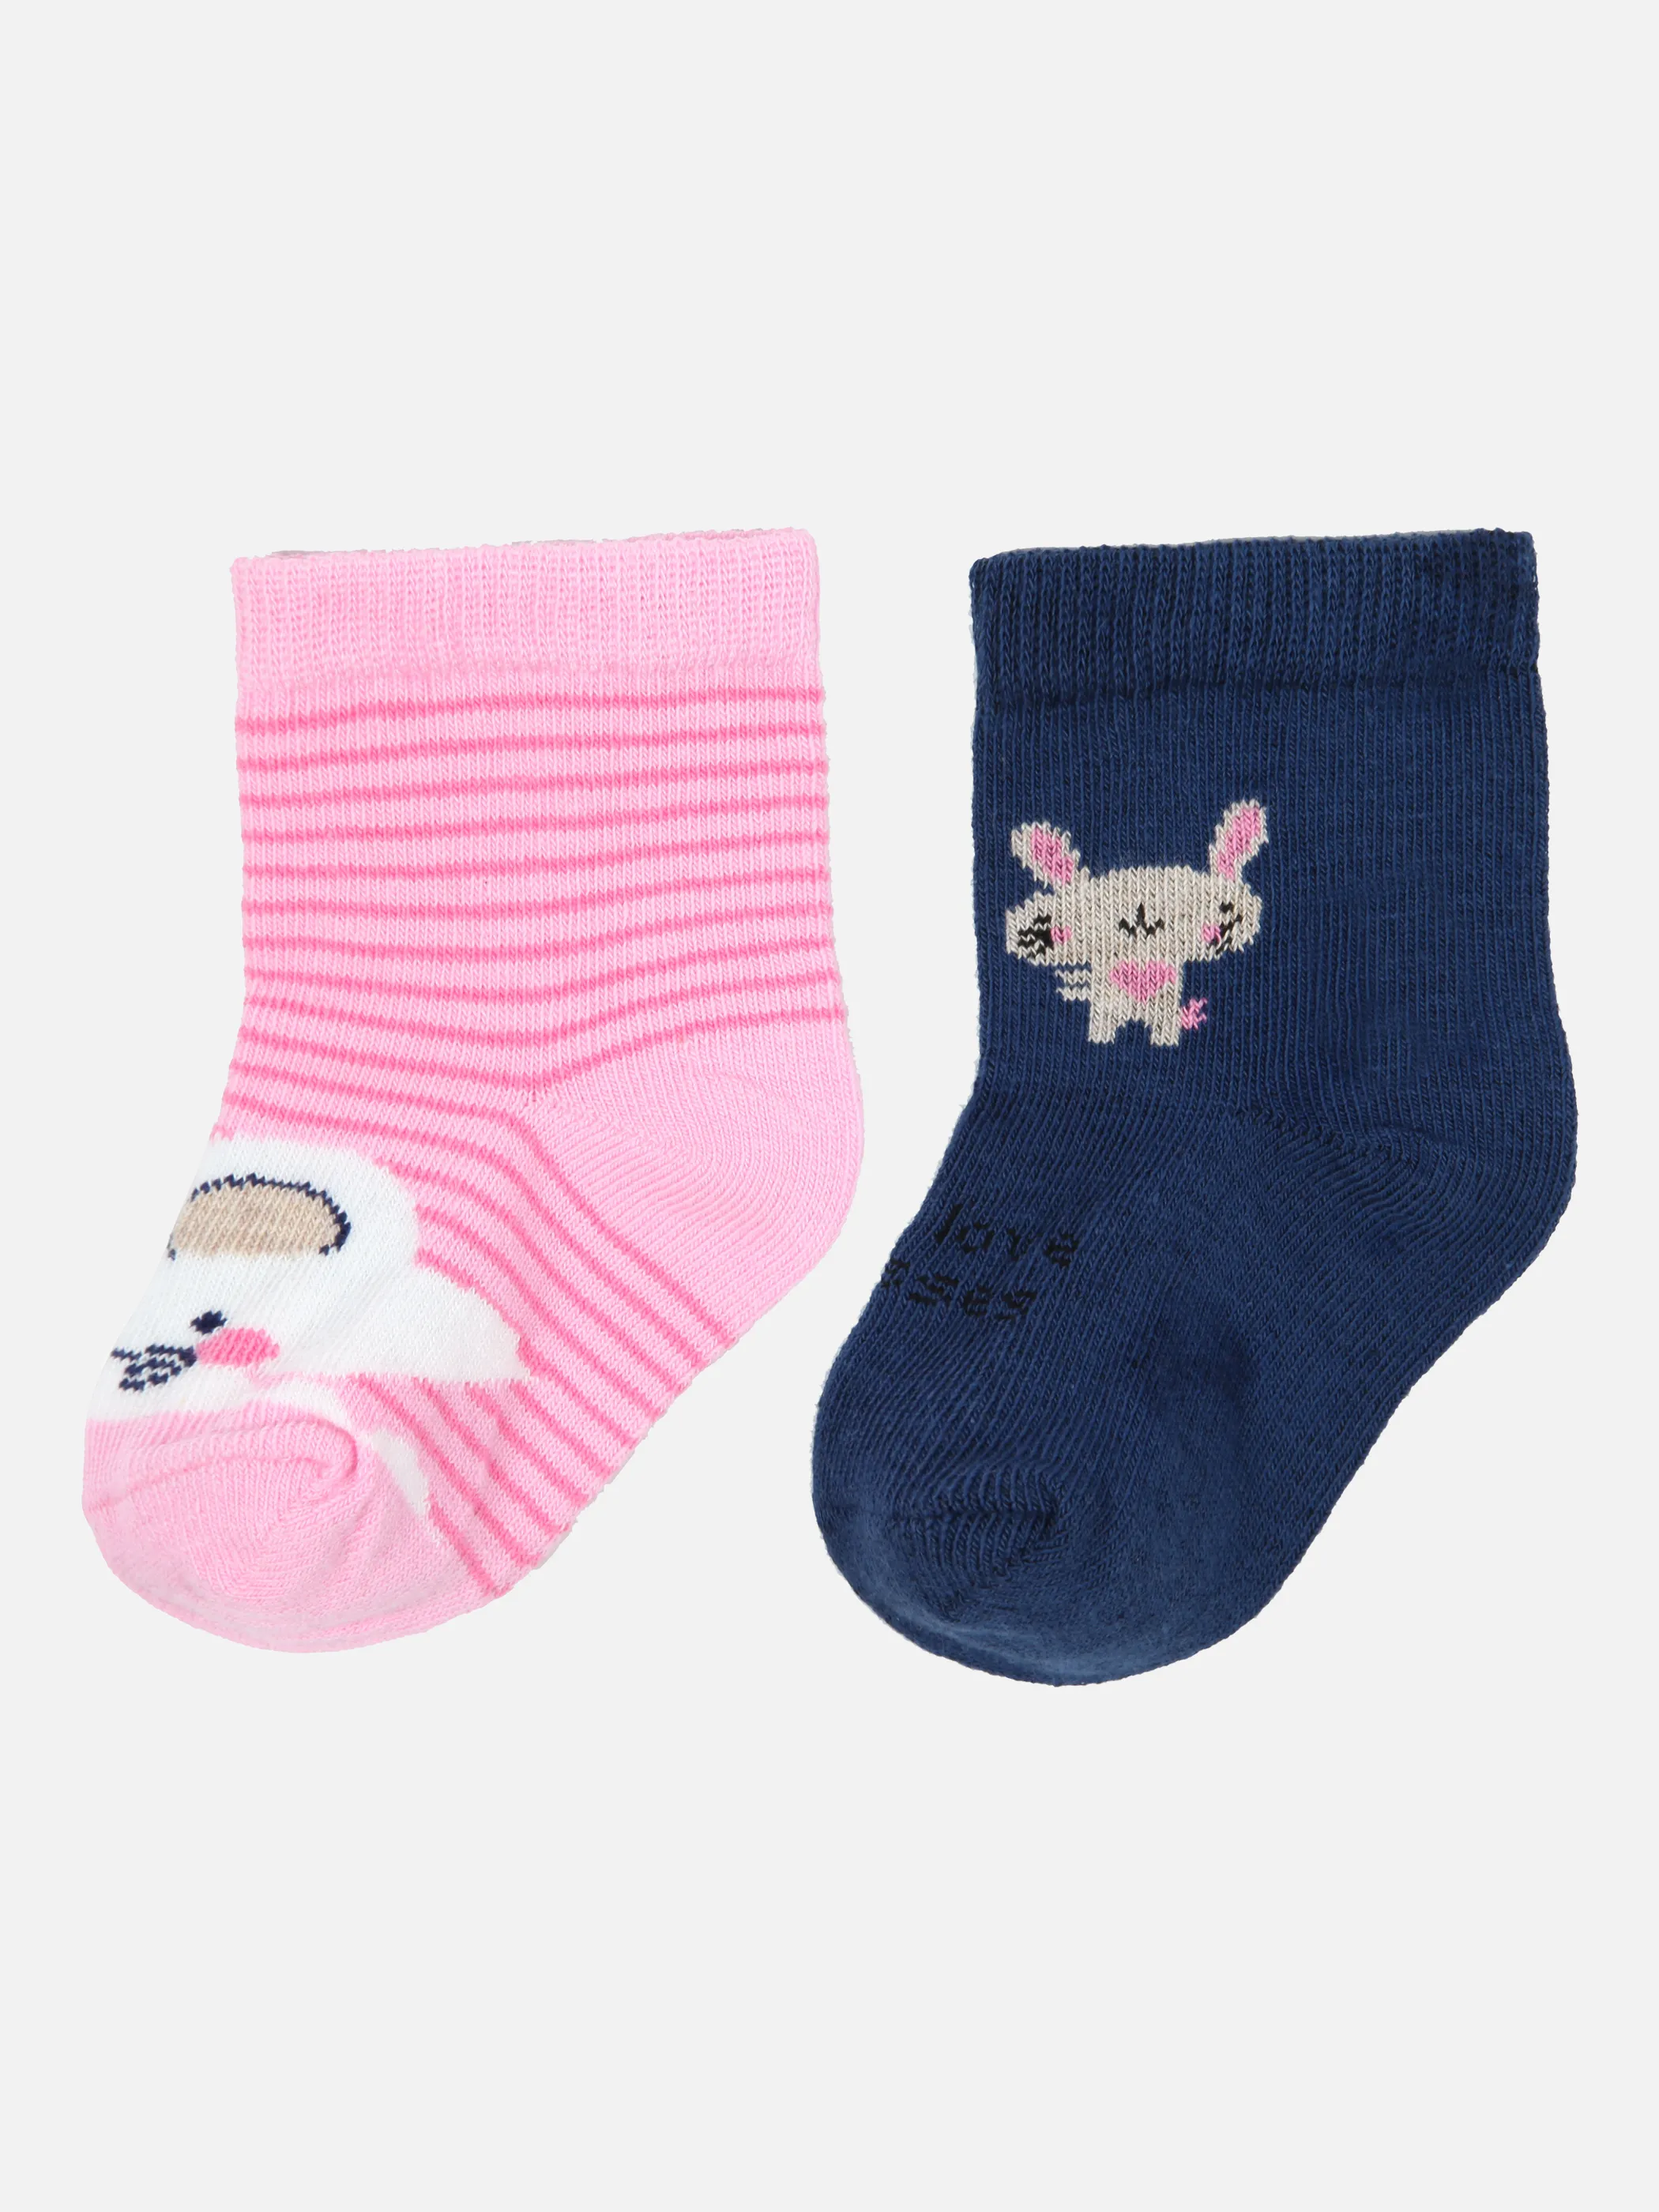 Bubble Gum Baby Girls Socken 2er Pack Mau Rosa 859400 DK BLUE/RO 2